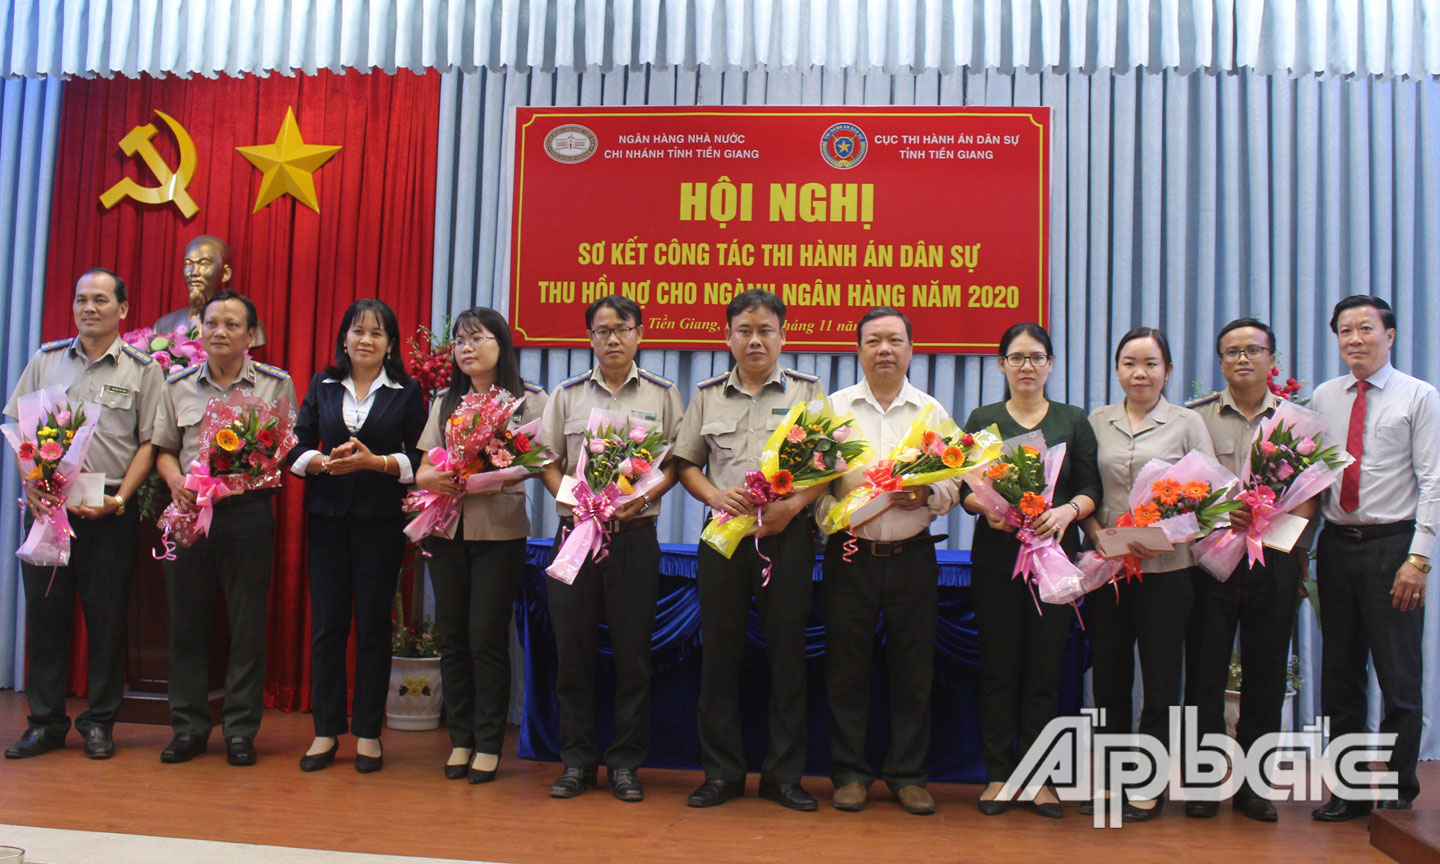 Đại diện NHNN Chi nhánh tỉnh Tiền Giang trao tặng thưởng cho các tập thể và cá nhân đã có thành tích xuất sắc trong công tác phối hợp THA thu hồi nợ cho ngành Ngân hàng năm 2020.